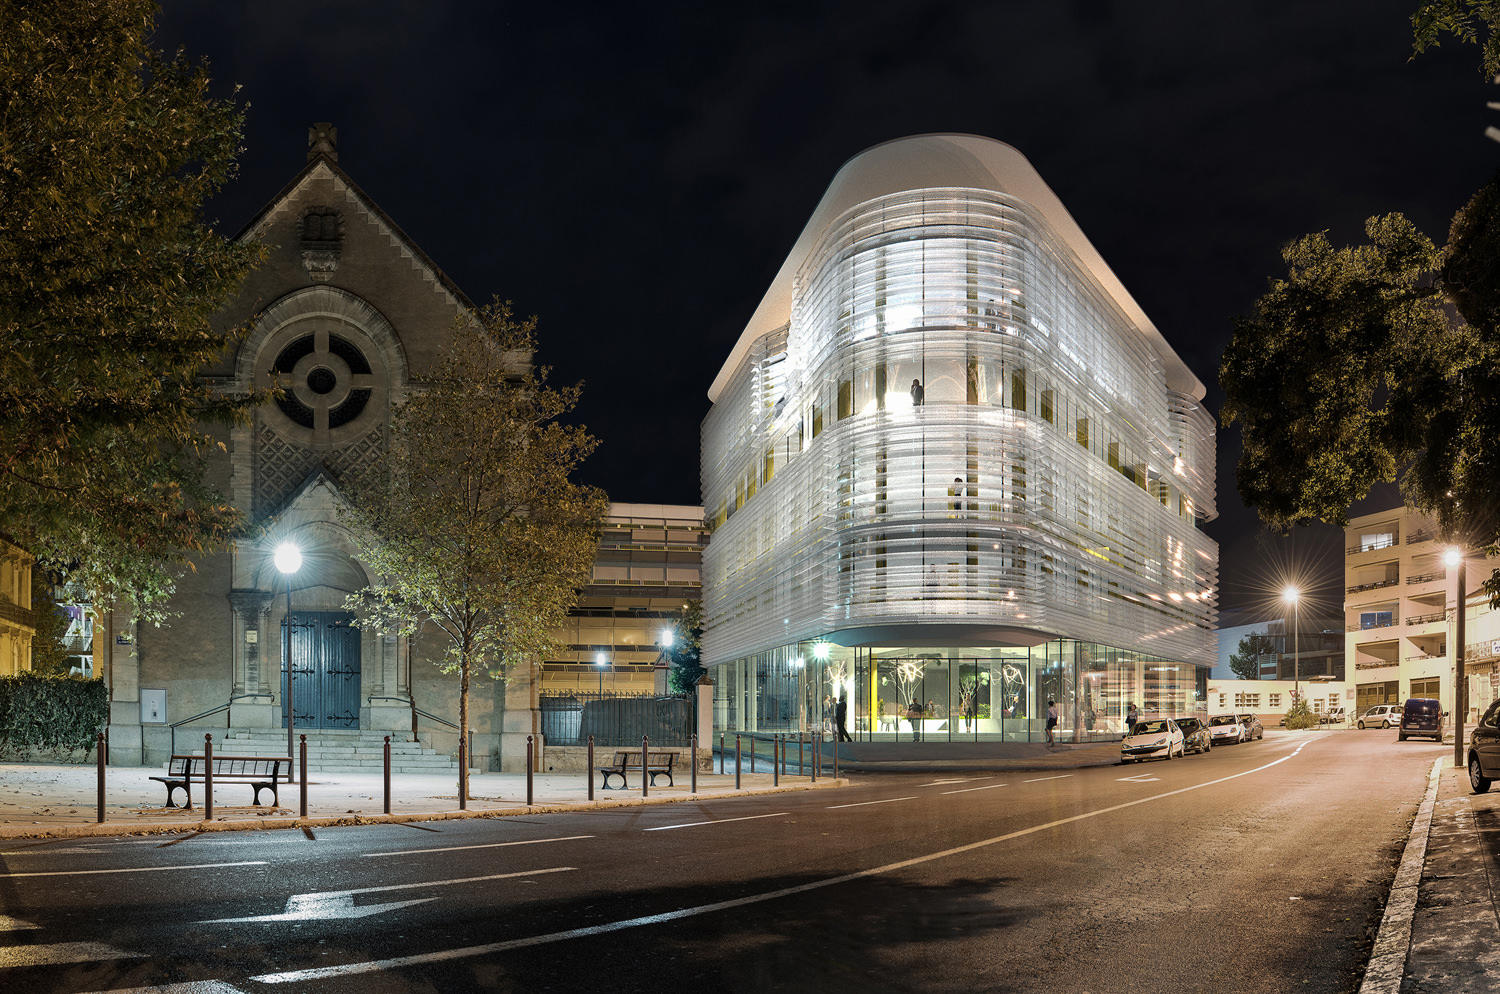 Intégration dans une photo de nuit d’un bâtiment modélisé en 3D à son paysage existant